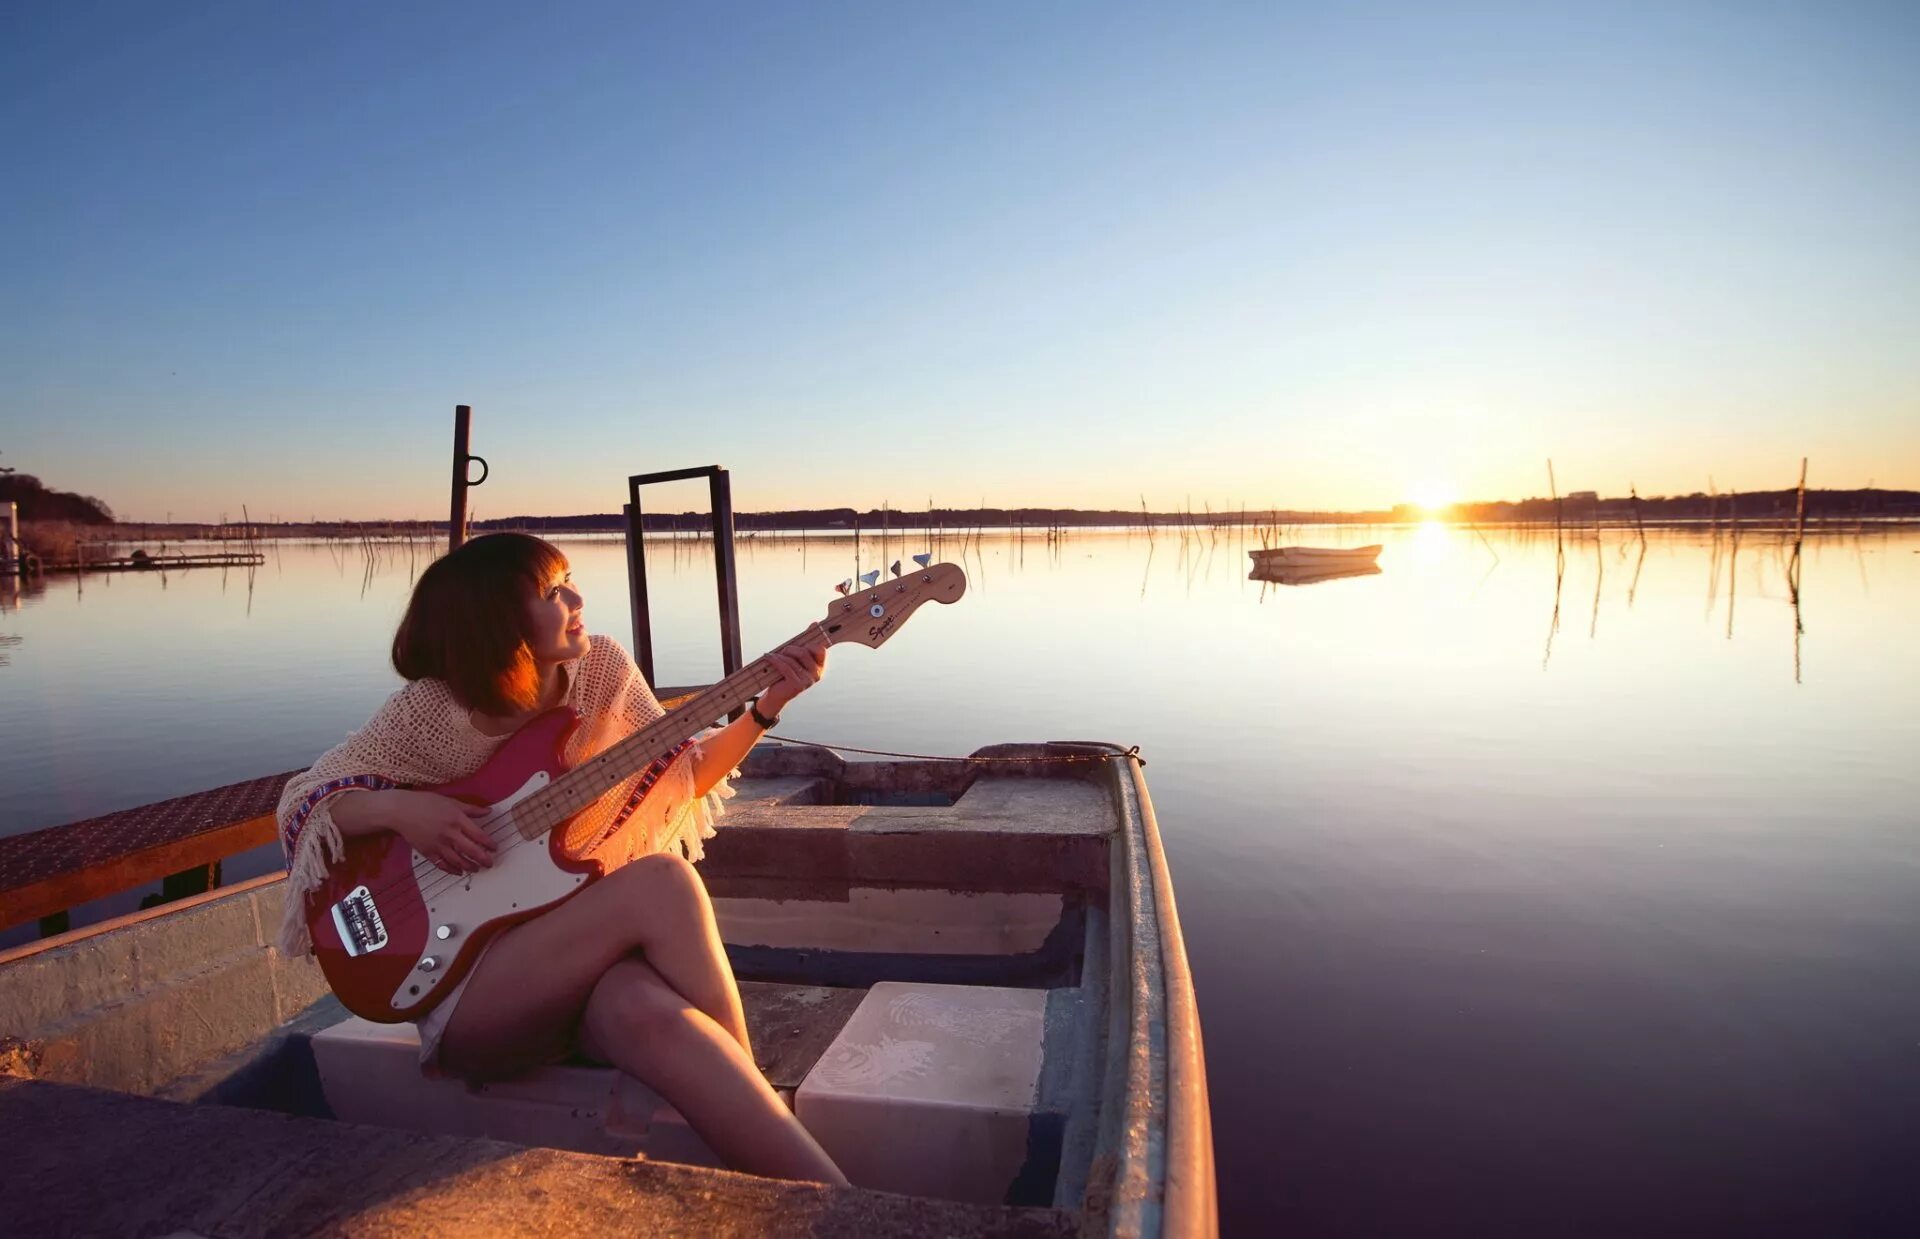 Девушка с гитарой на берегу. Девушка в лодке. Девушка в лодке на закате. Девушка с гитарой на закате. Песни делают вечер нарядным